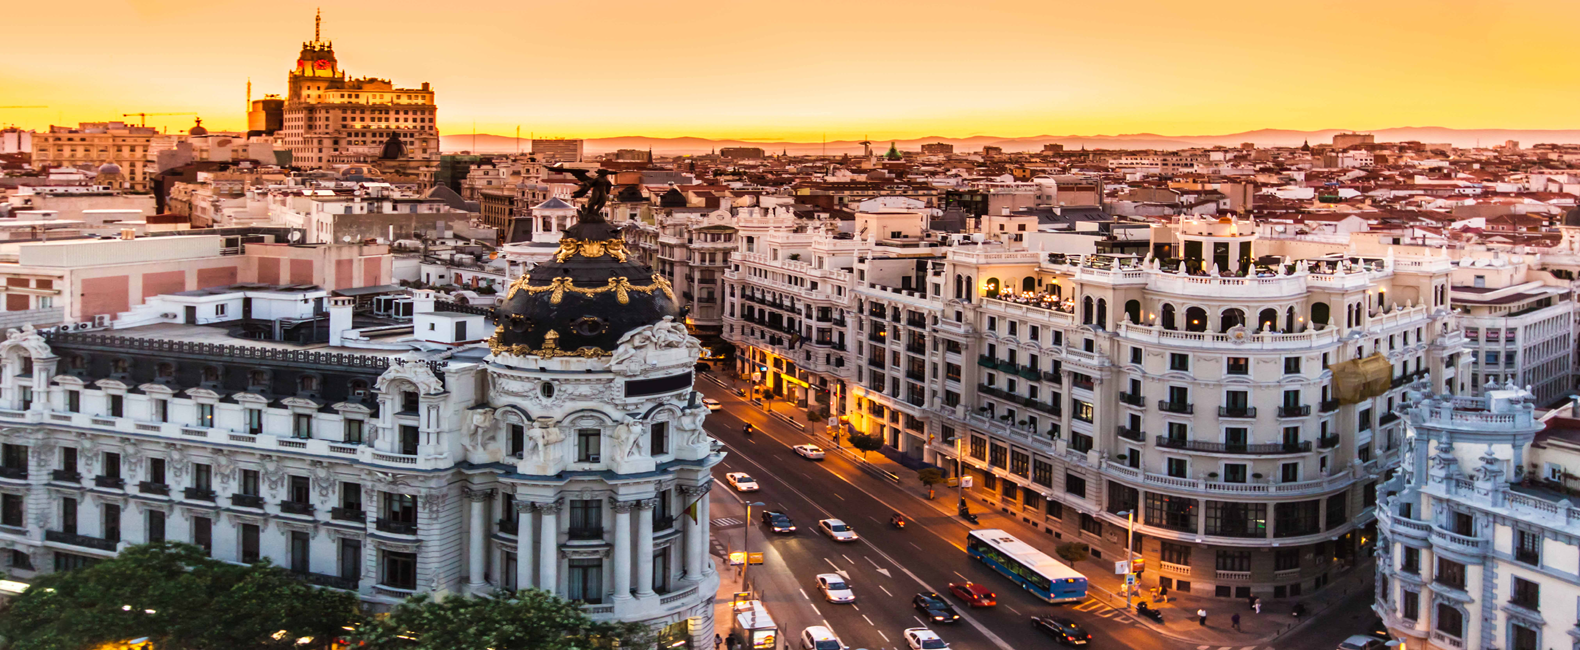 Мадрид - столица Испании.